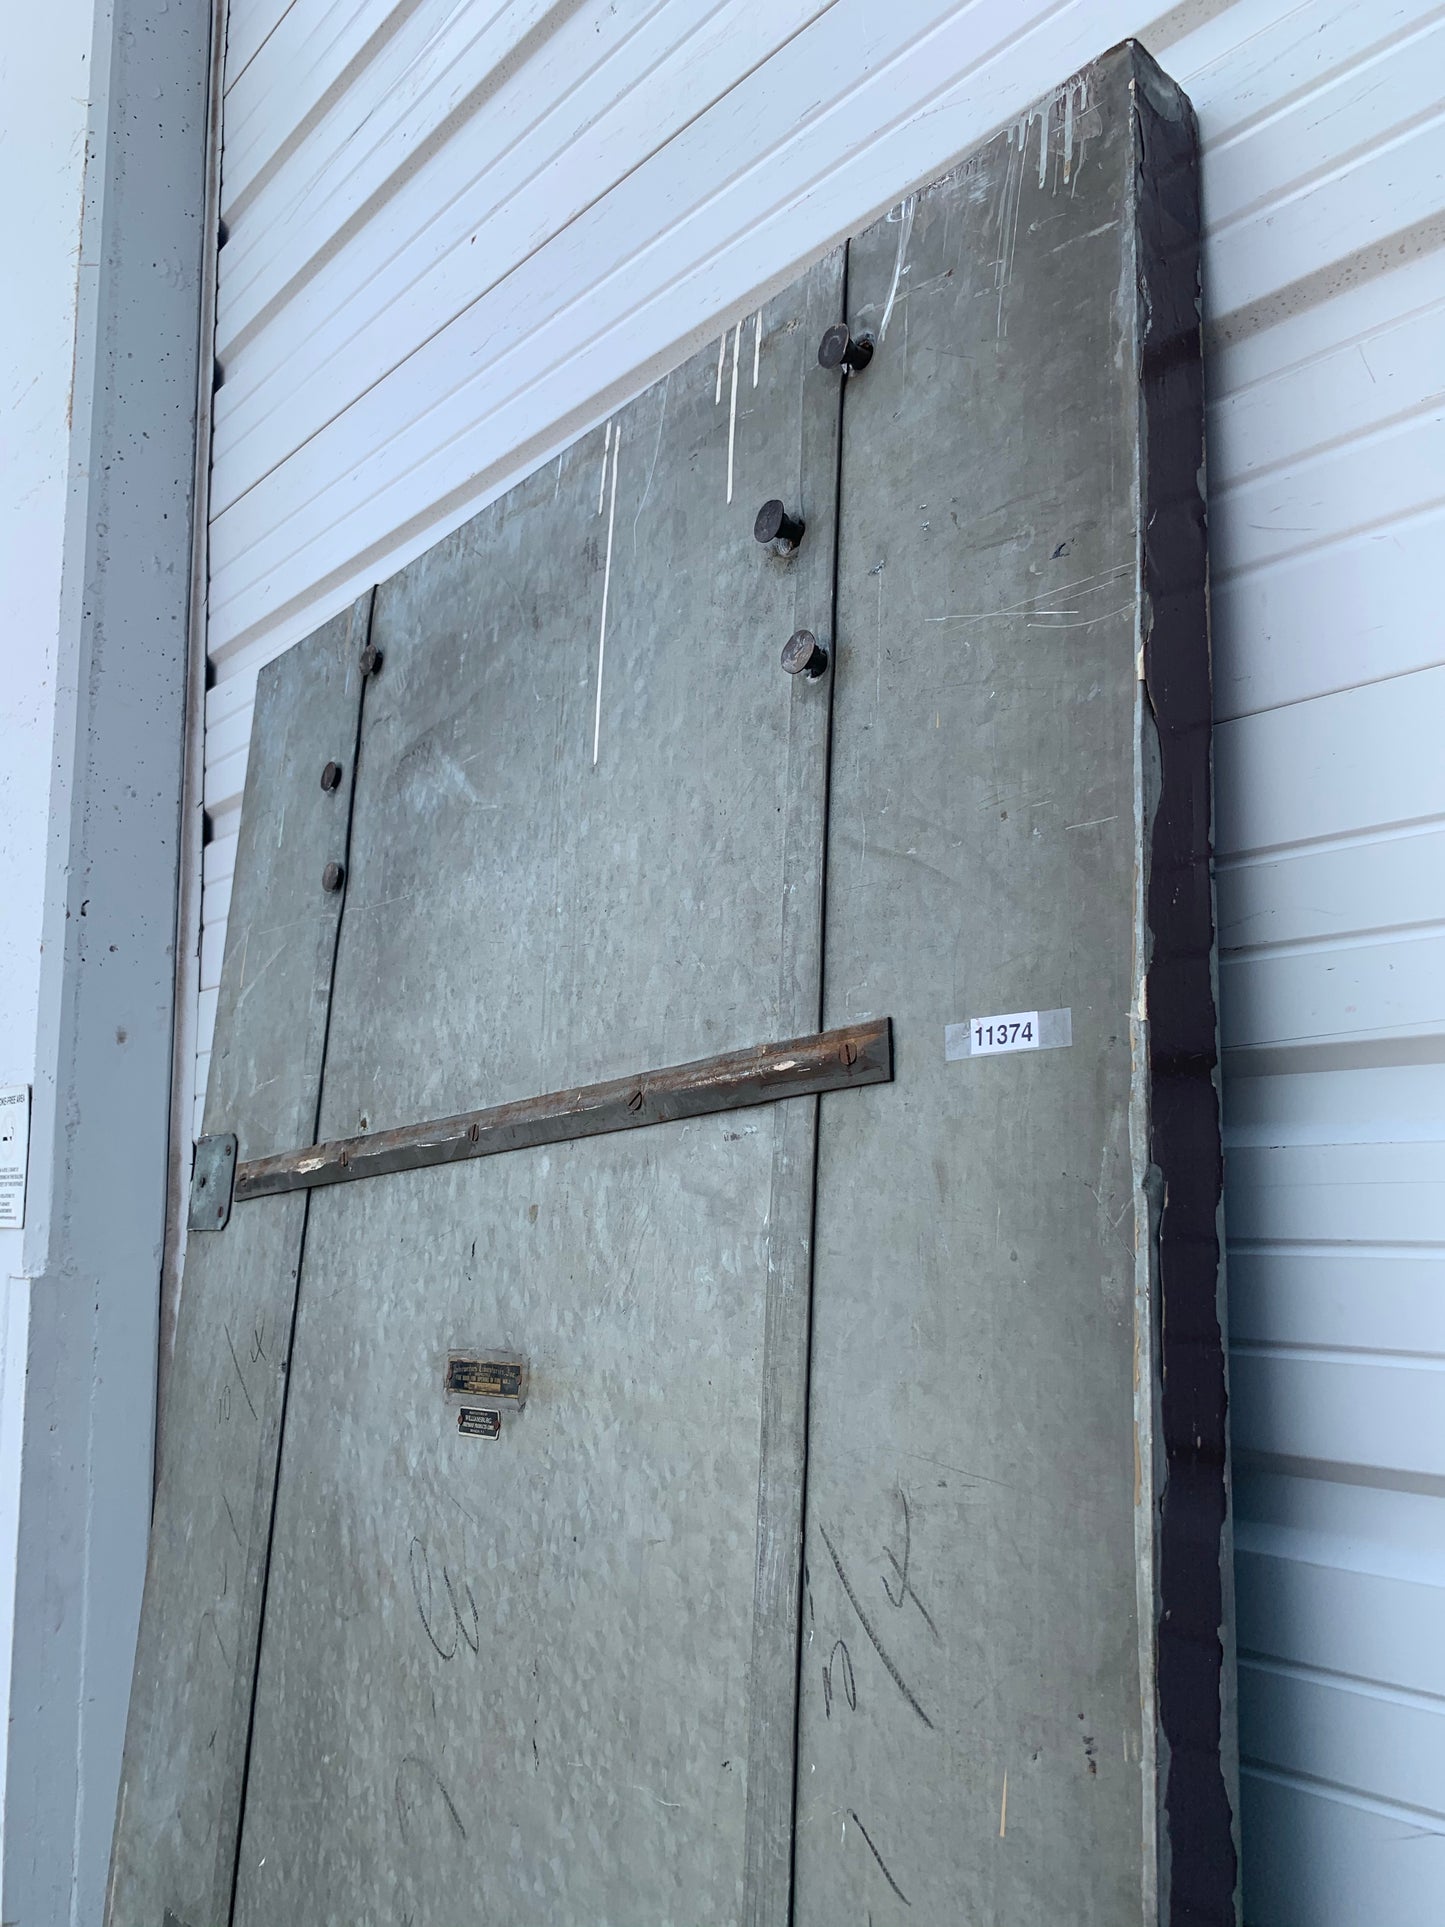 Metal Industrial Fire Single Door with Angled Top